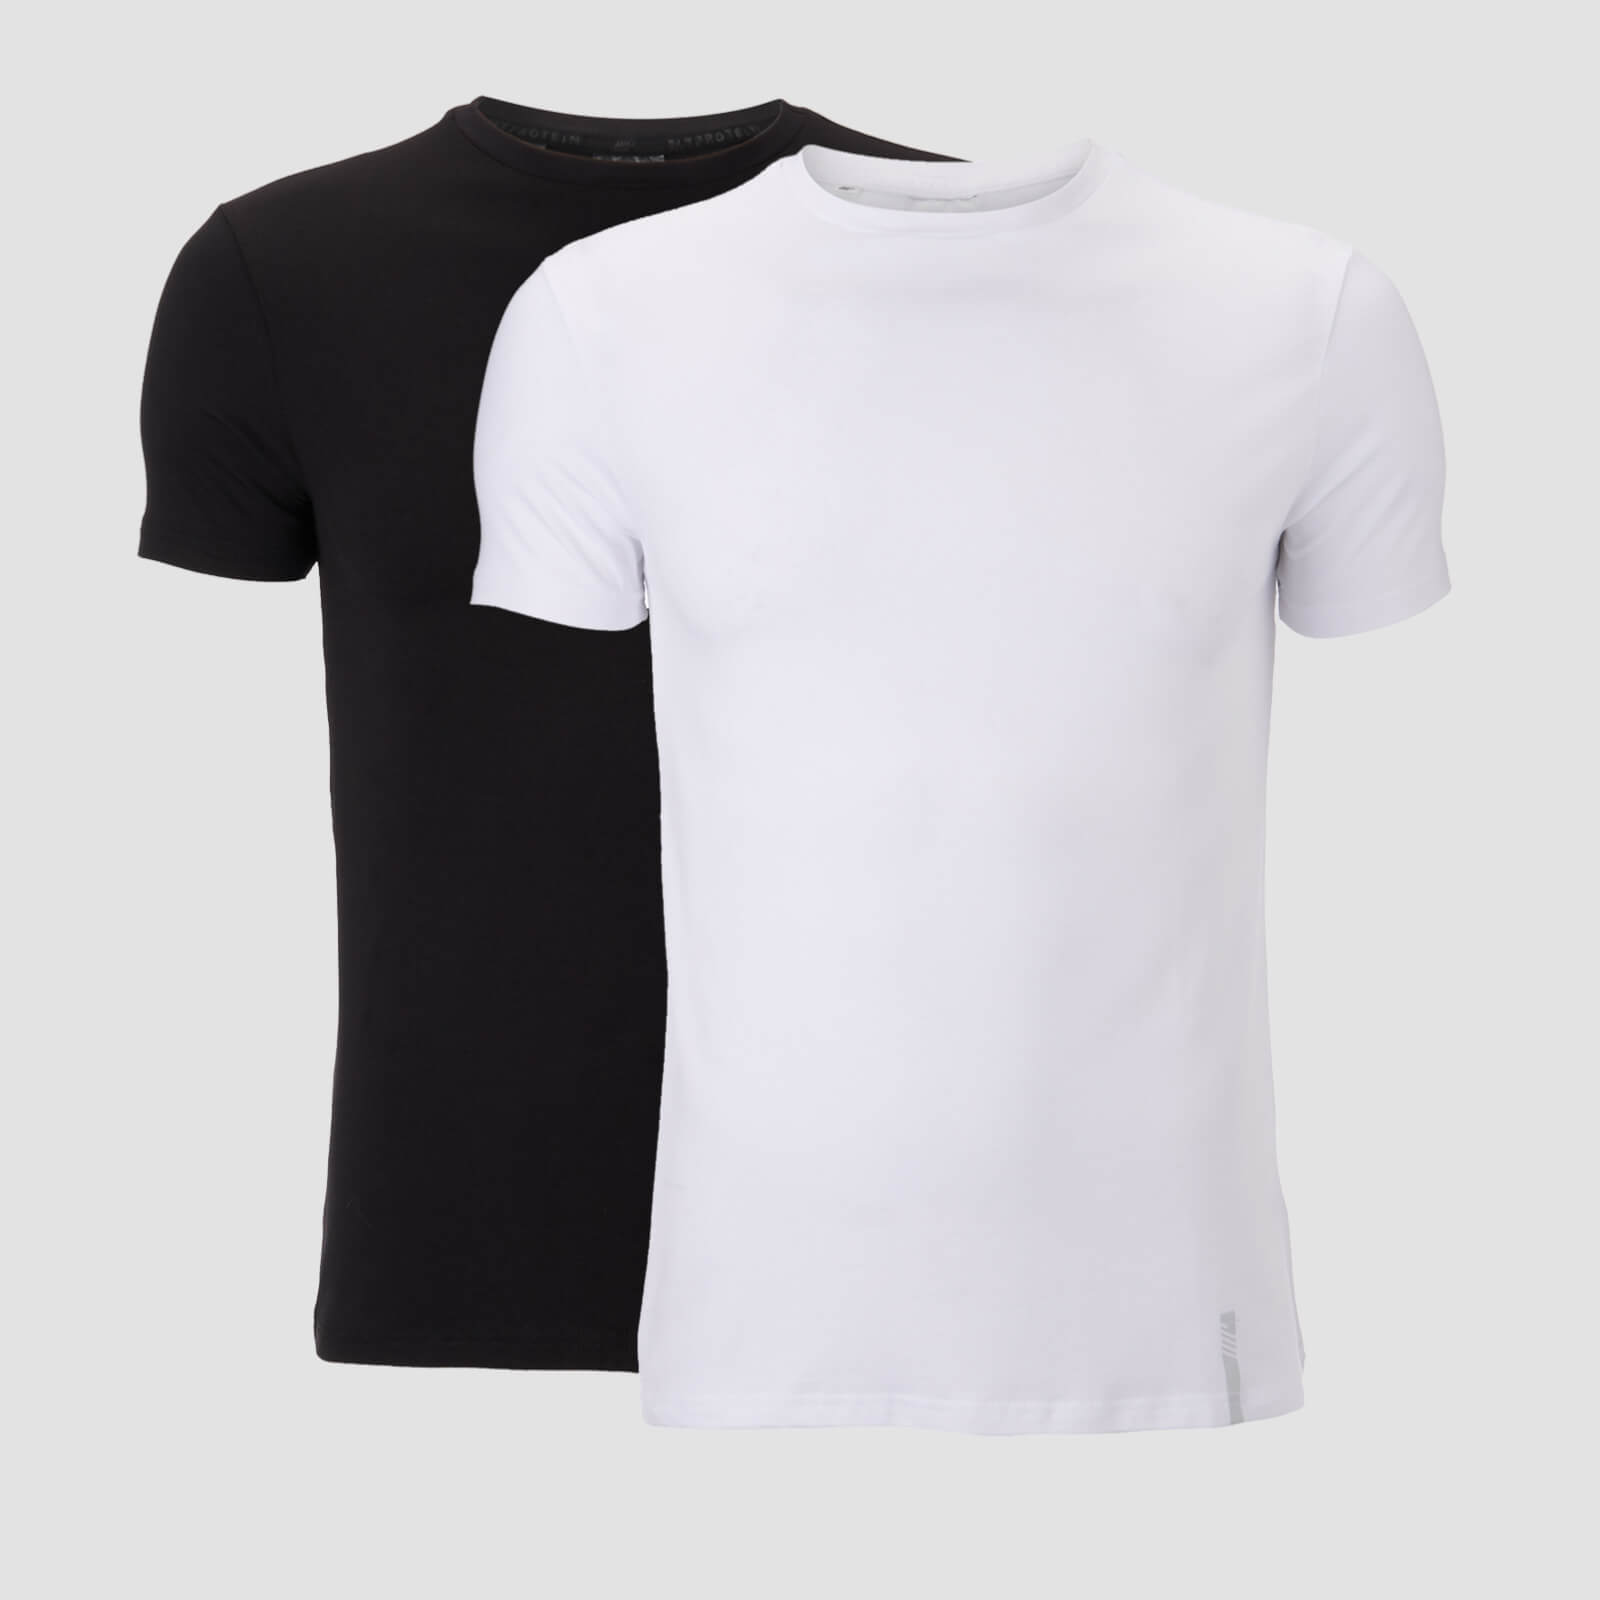 T-Shirt Luxe Classic Crew para Homem da MP - Preto/Branco (2 un.) - M